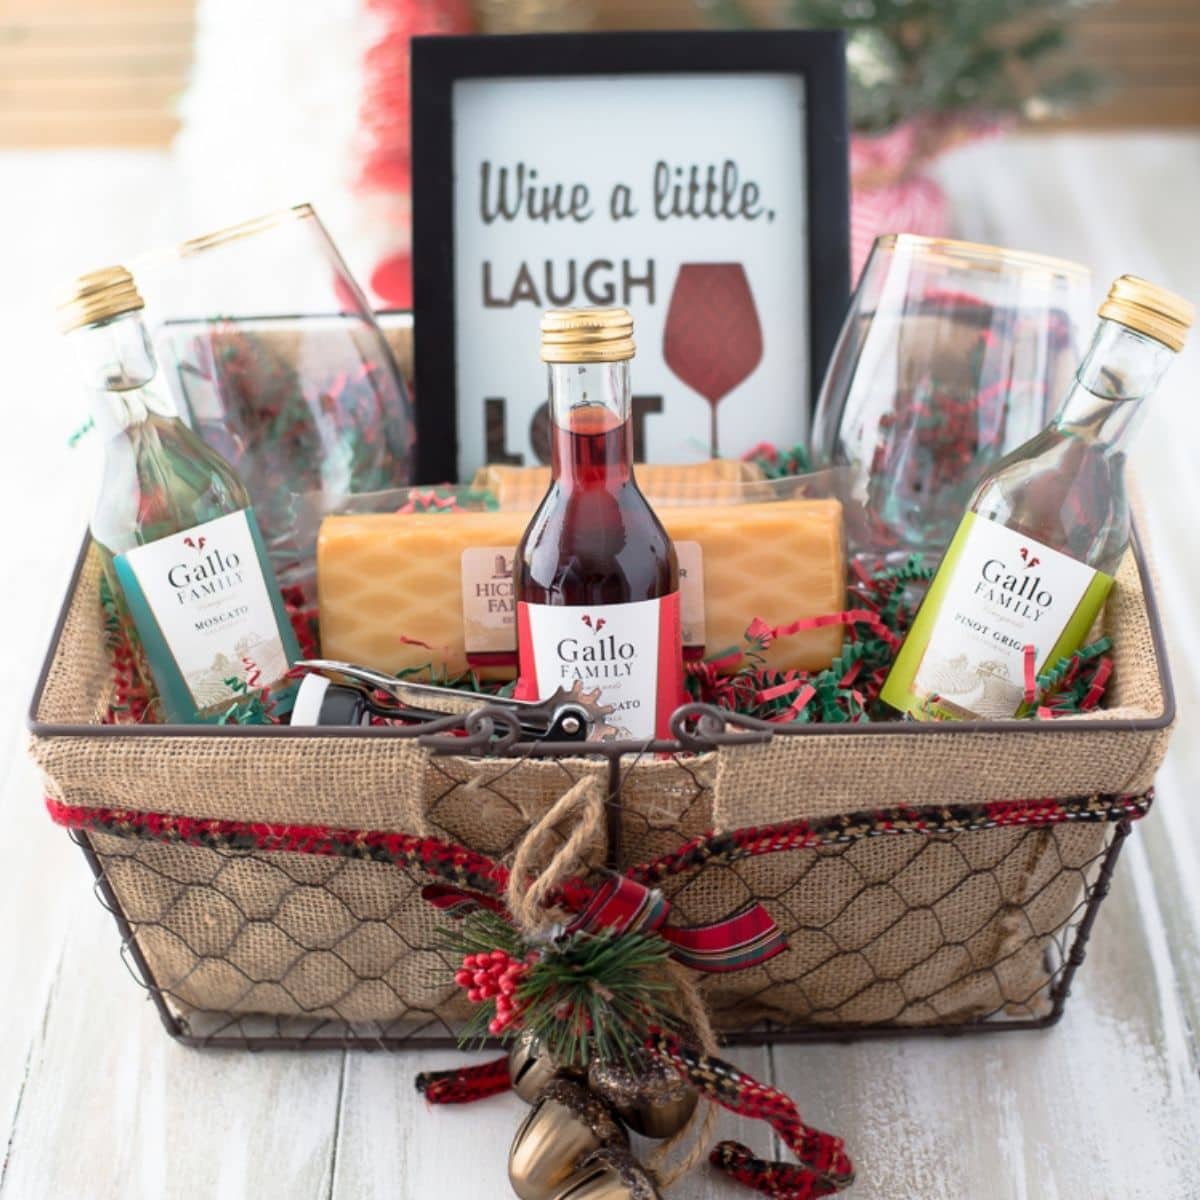 https://flouronmyface.com/wp-content/uploads/2017/12/wine-gift-basket.jpg